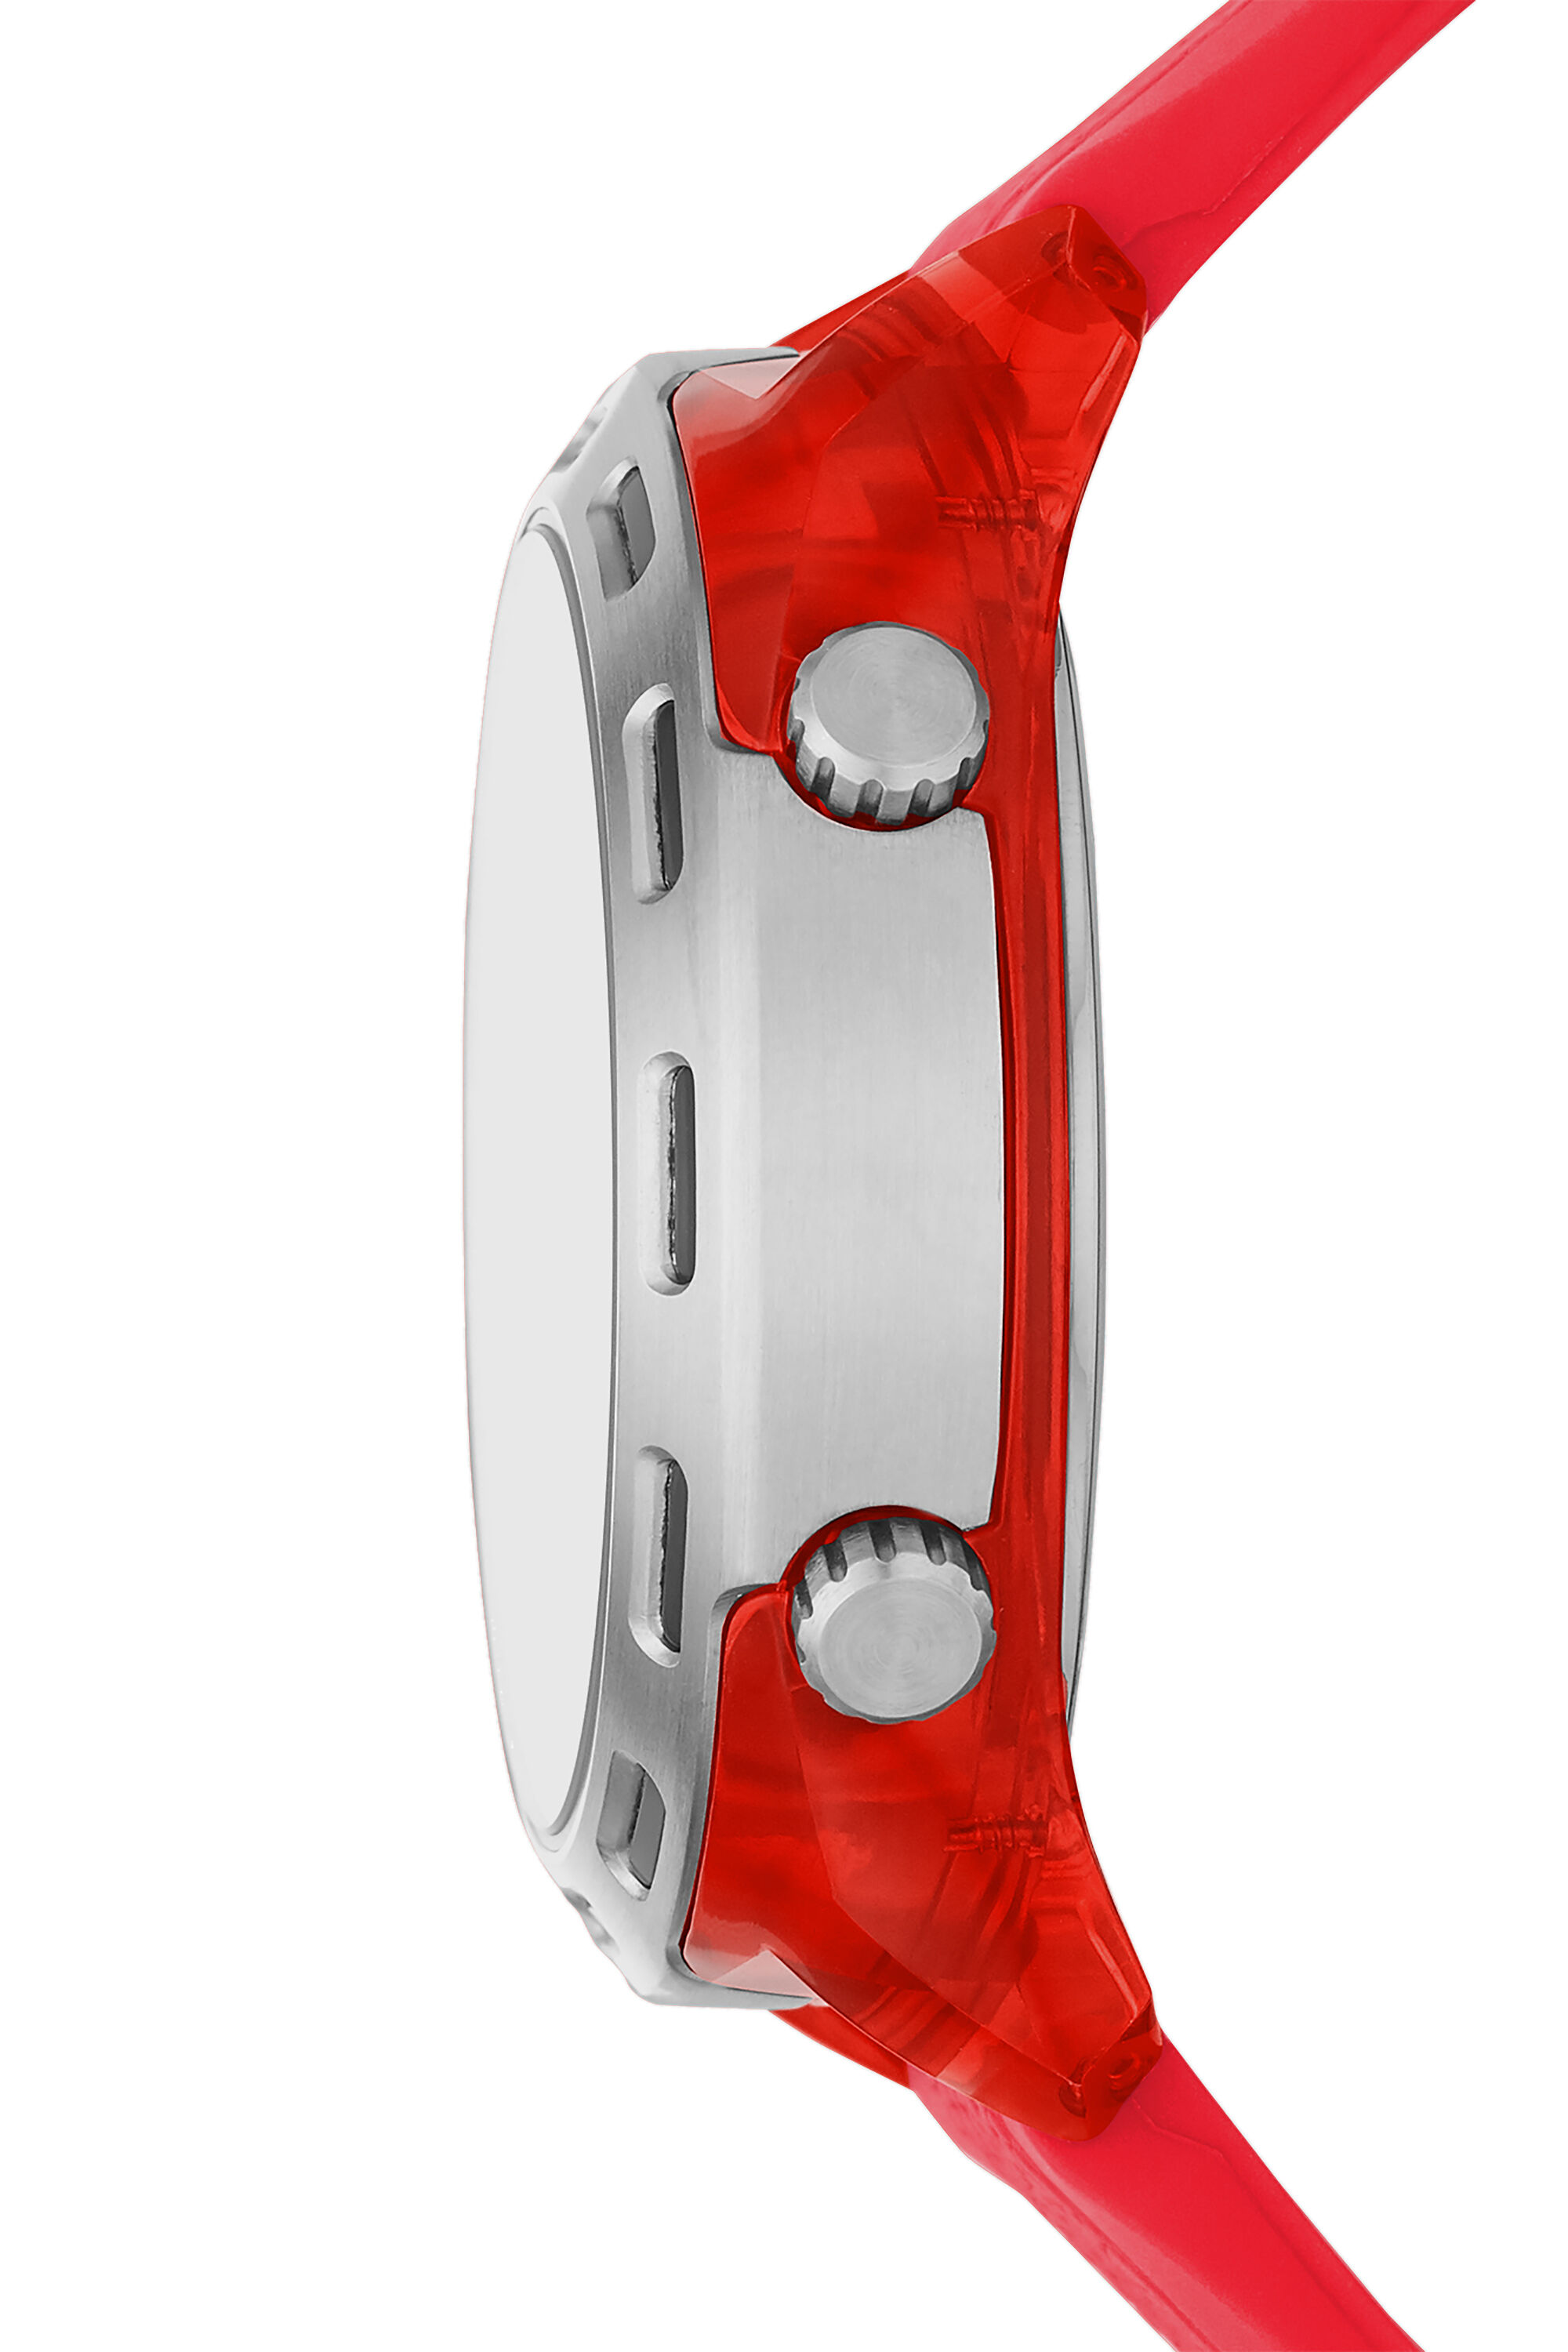 DZ1900 Man: Crusher digital red silicone watch | Diesel